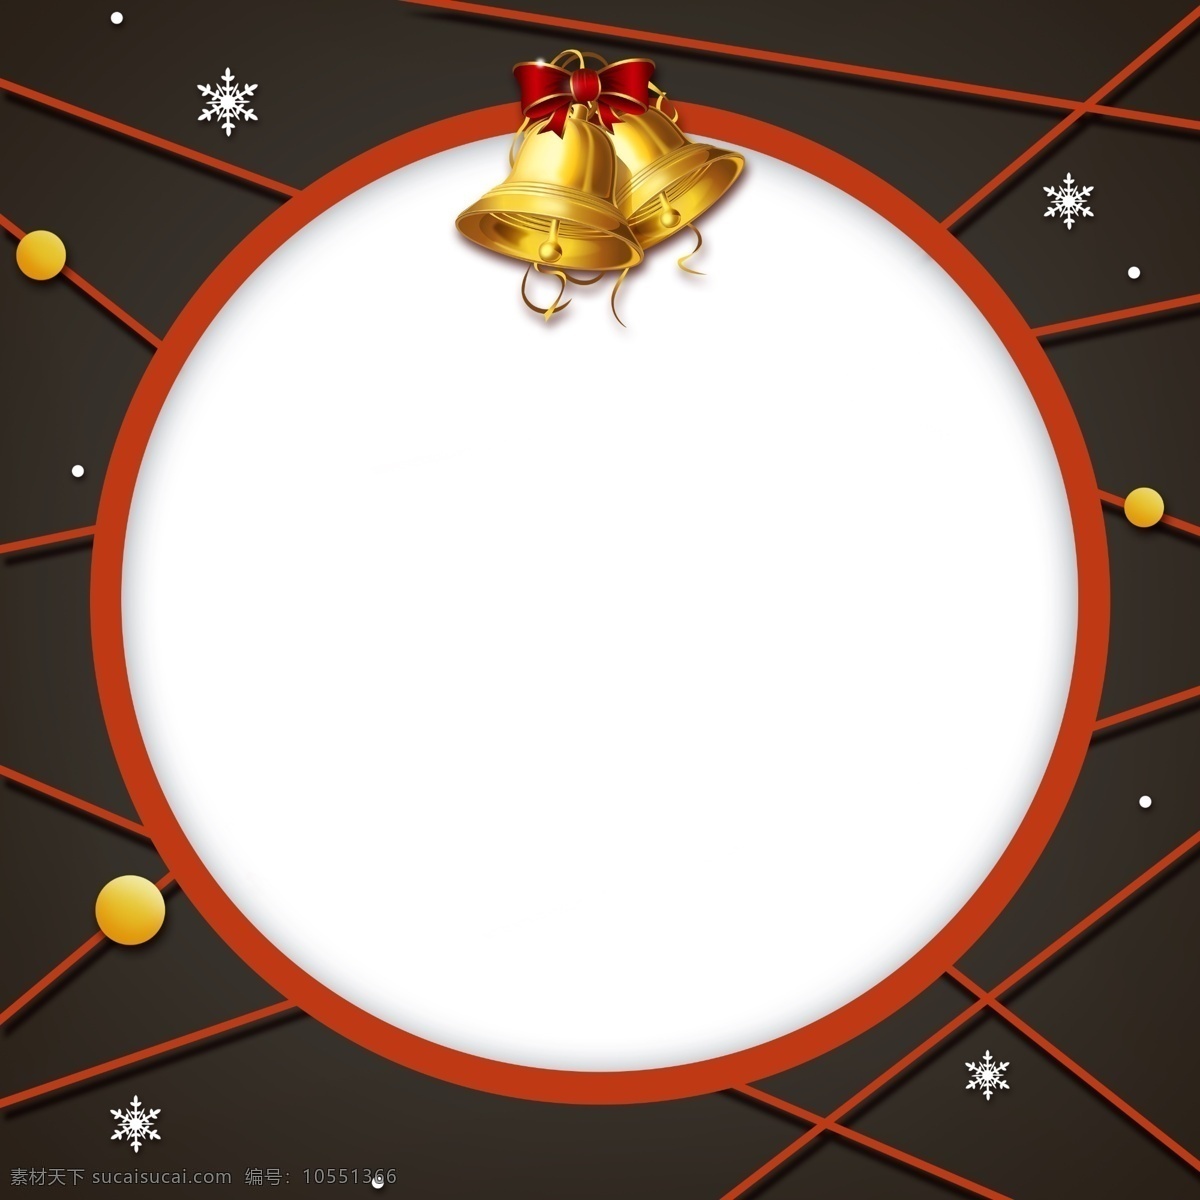 手绘 圣诞 铃铛 边框 铃铛边框 圣诞铃铛 红色 圆形边框 剪纸边框 插画 黄色铃铛 蝴蝶结